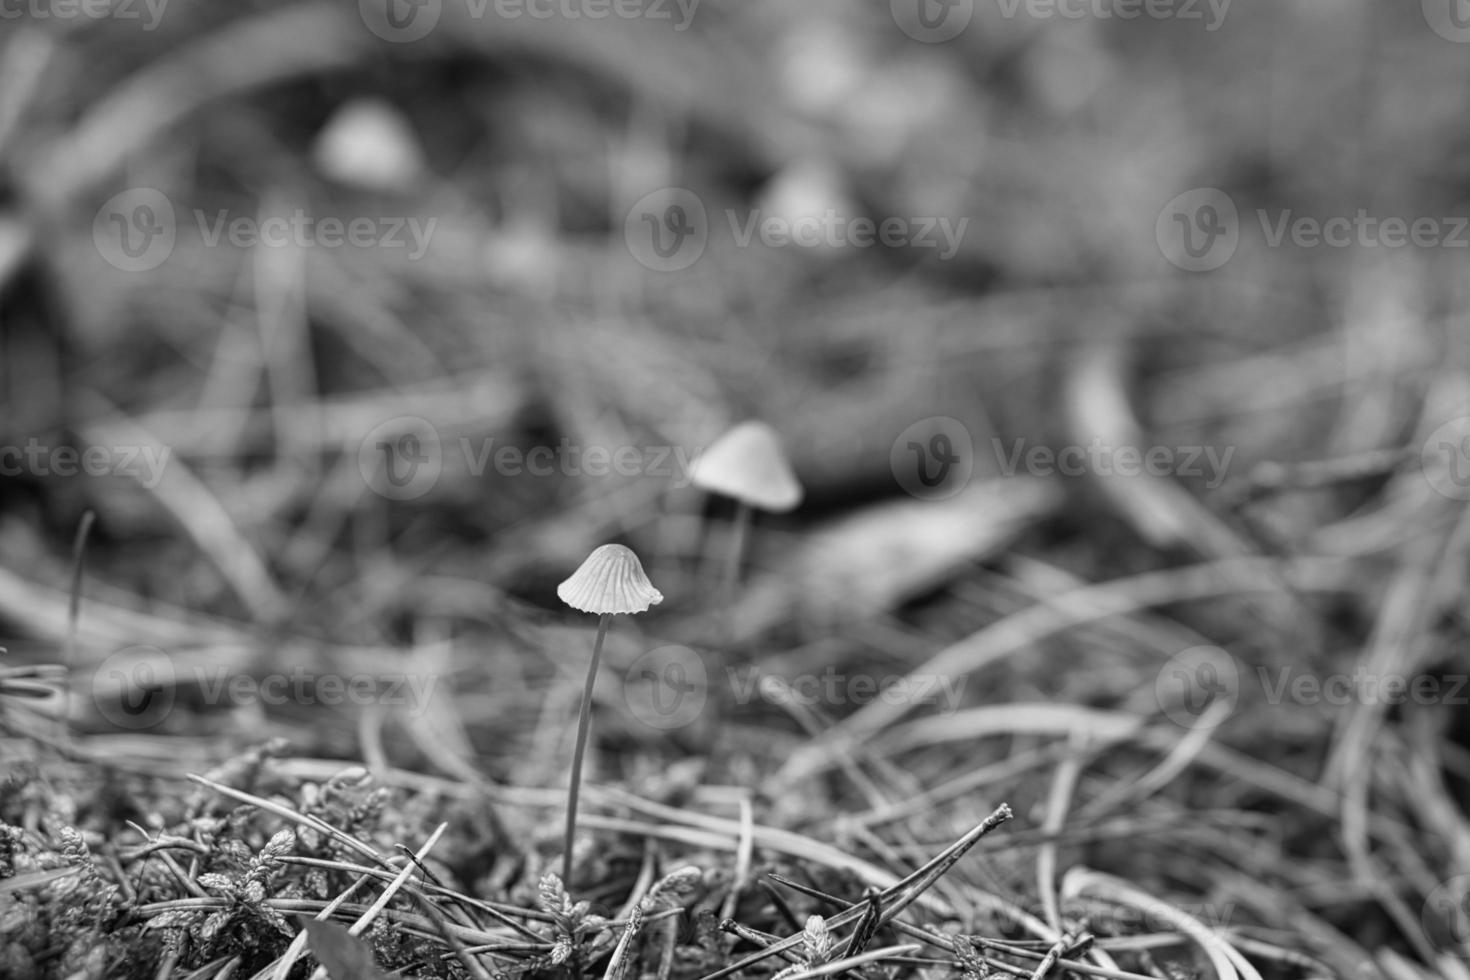 un groupe de petits champignons en filigrane, pris en noir et blanc, sur le sol de la forêt photo